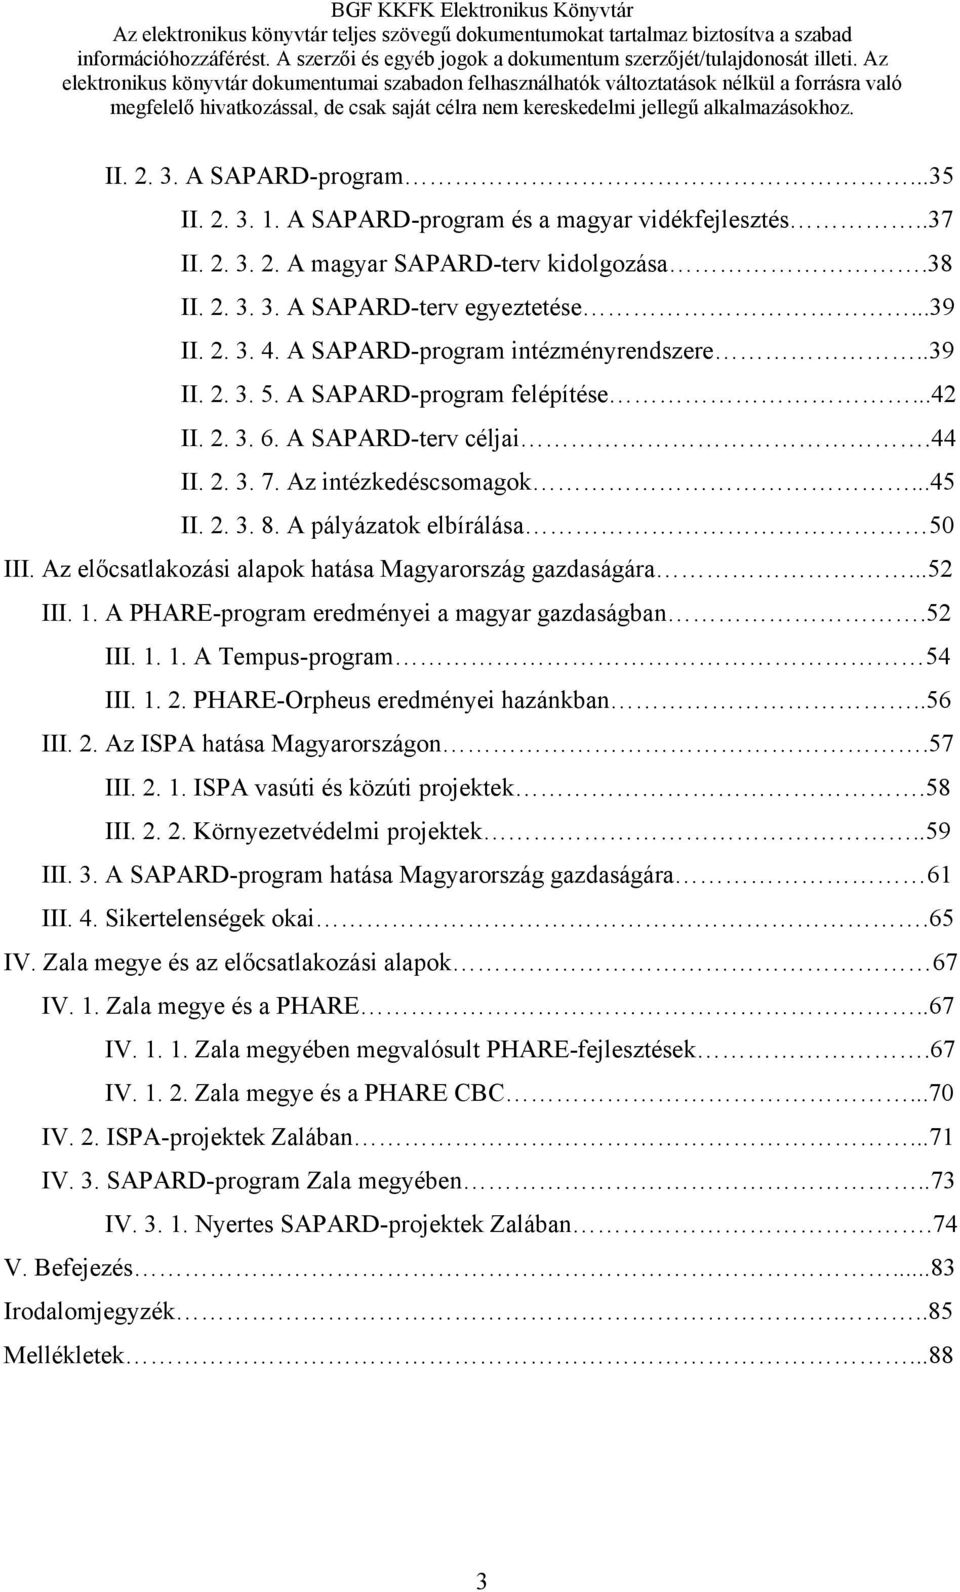 A pályázatok elbírálása 50 III. Az előcsatlakozási alapok hatása Magyarország gazdaságára...52 III. 1. A PHARE-program eredményei a magyar gazdaságban.52 III. 1. 1. A Tempus-program 54 III. 1. 2.